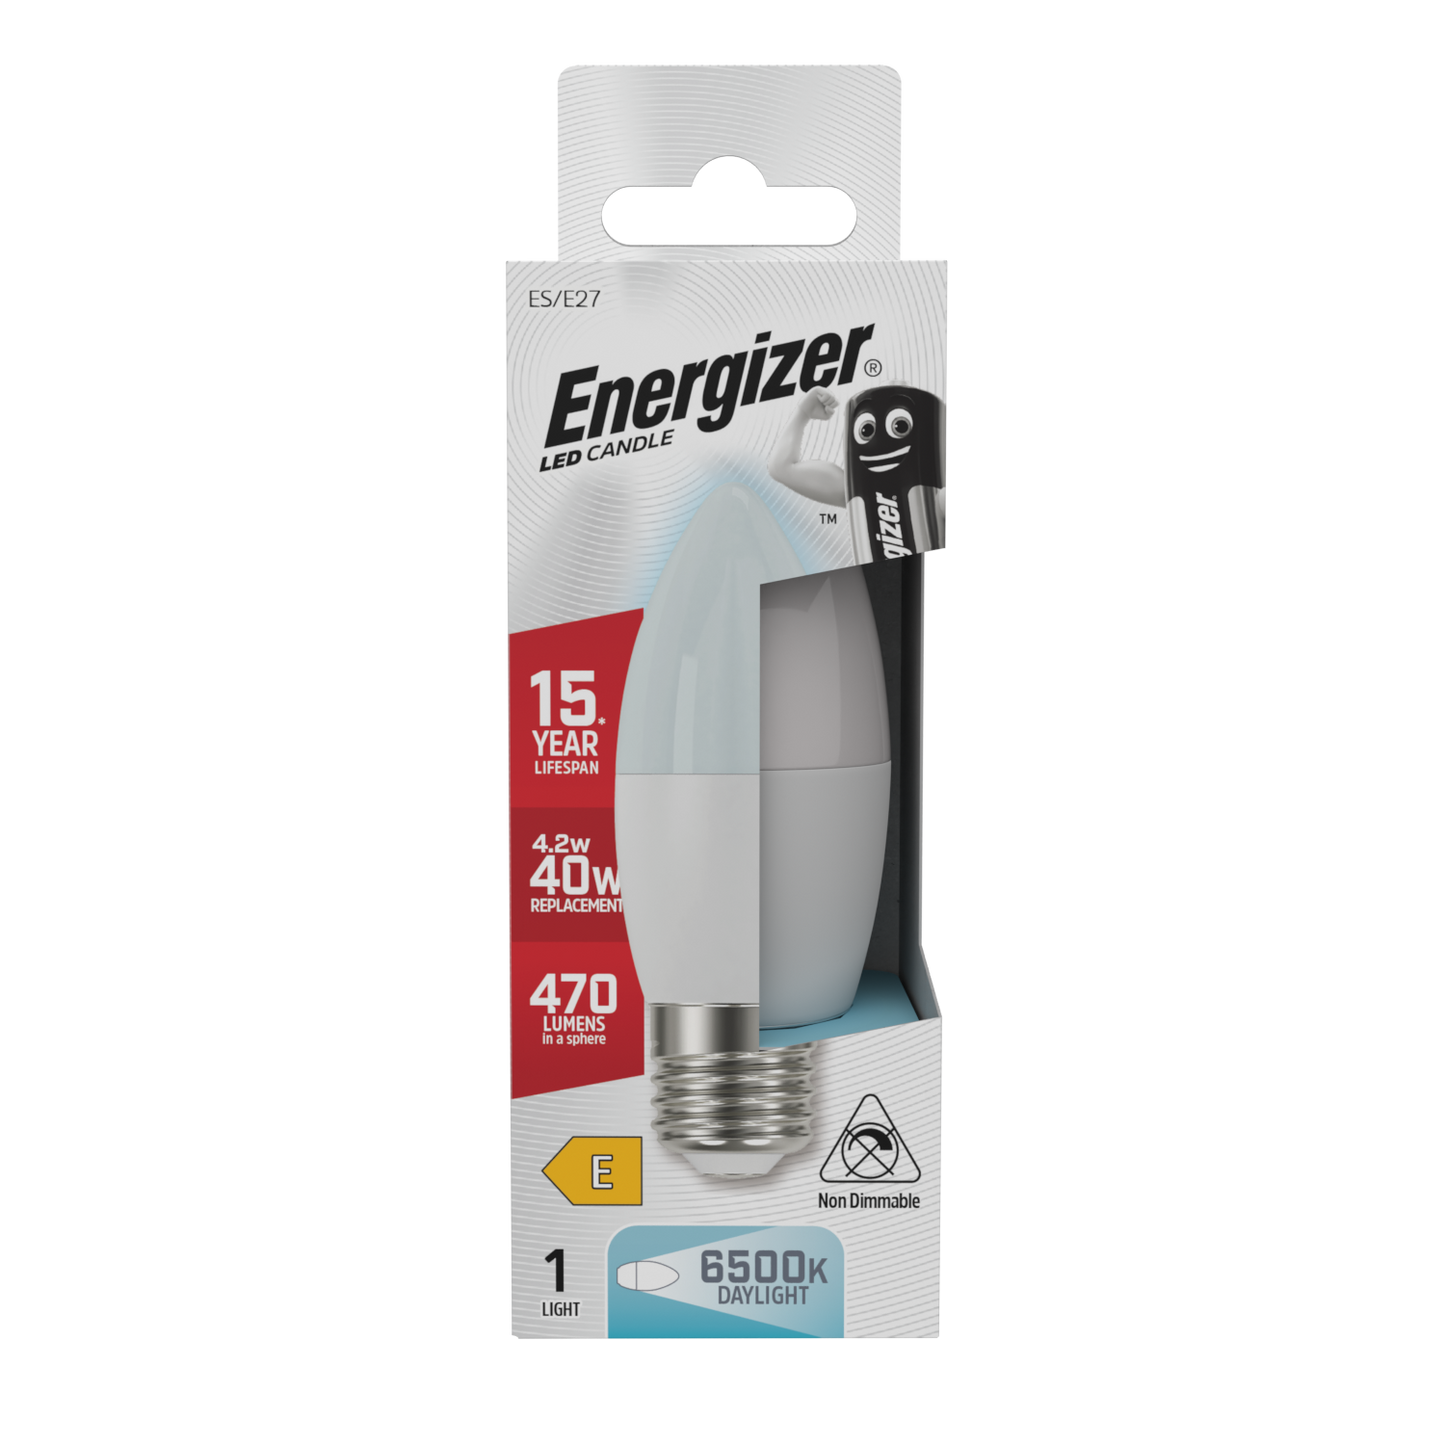 Energizer LED Candle E27 (ES) 470lm 4.2W 6,500K (Daylight), Box of 1